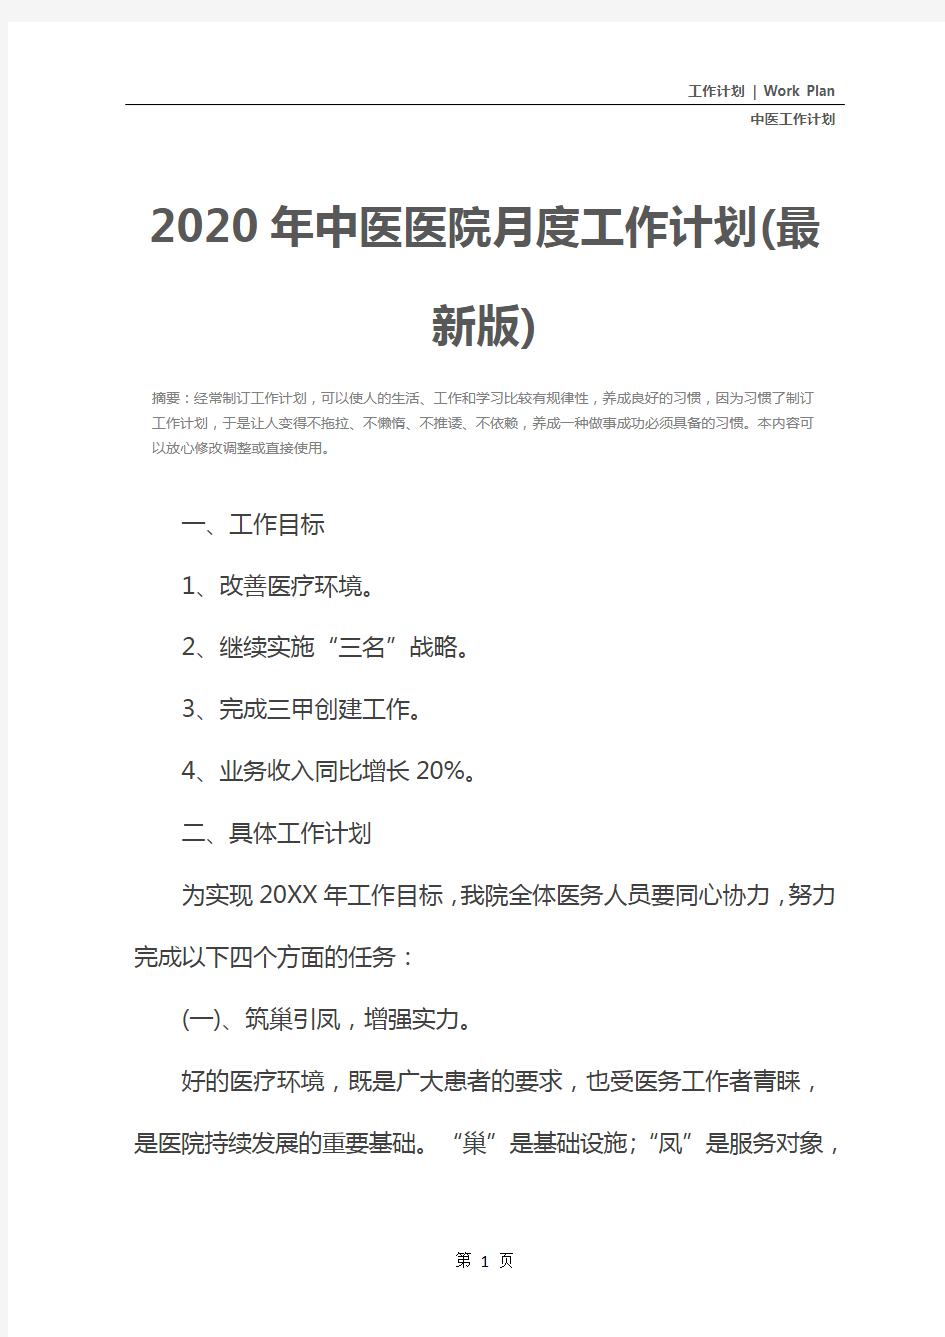 2020年中医医院月度工作计划(最新版)